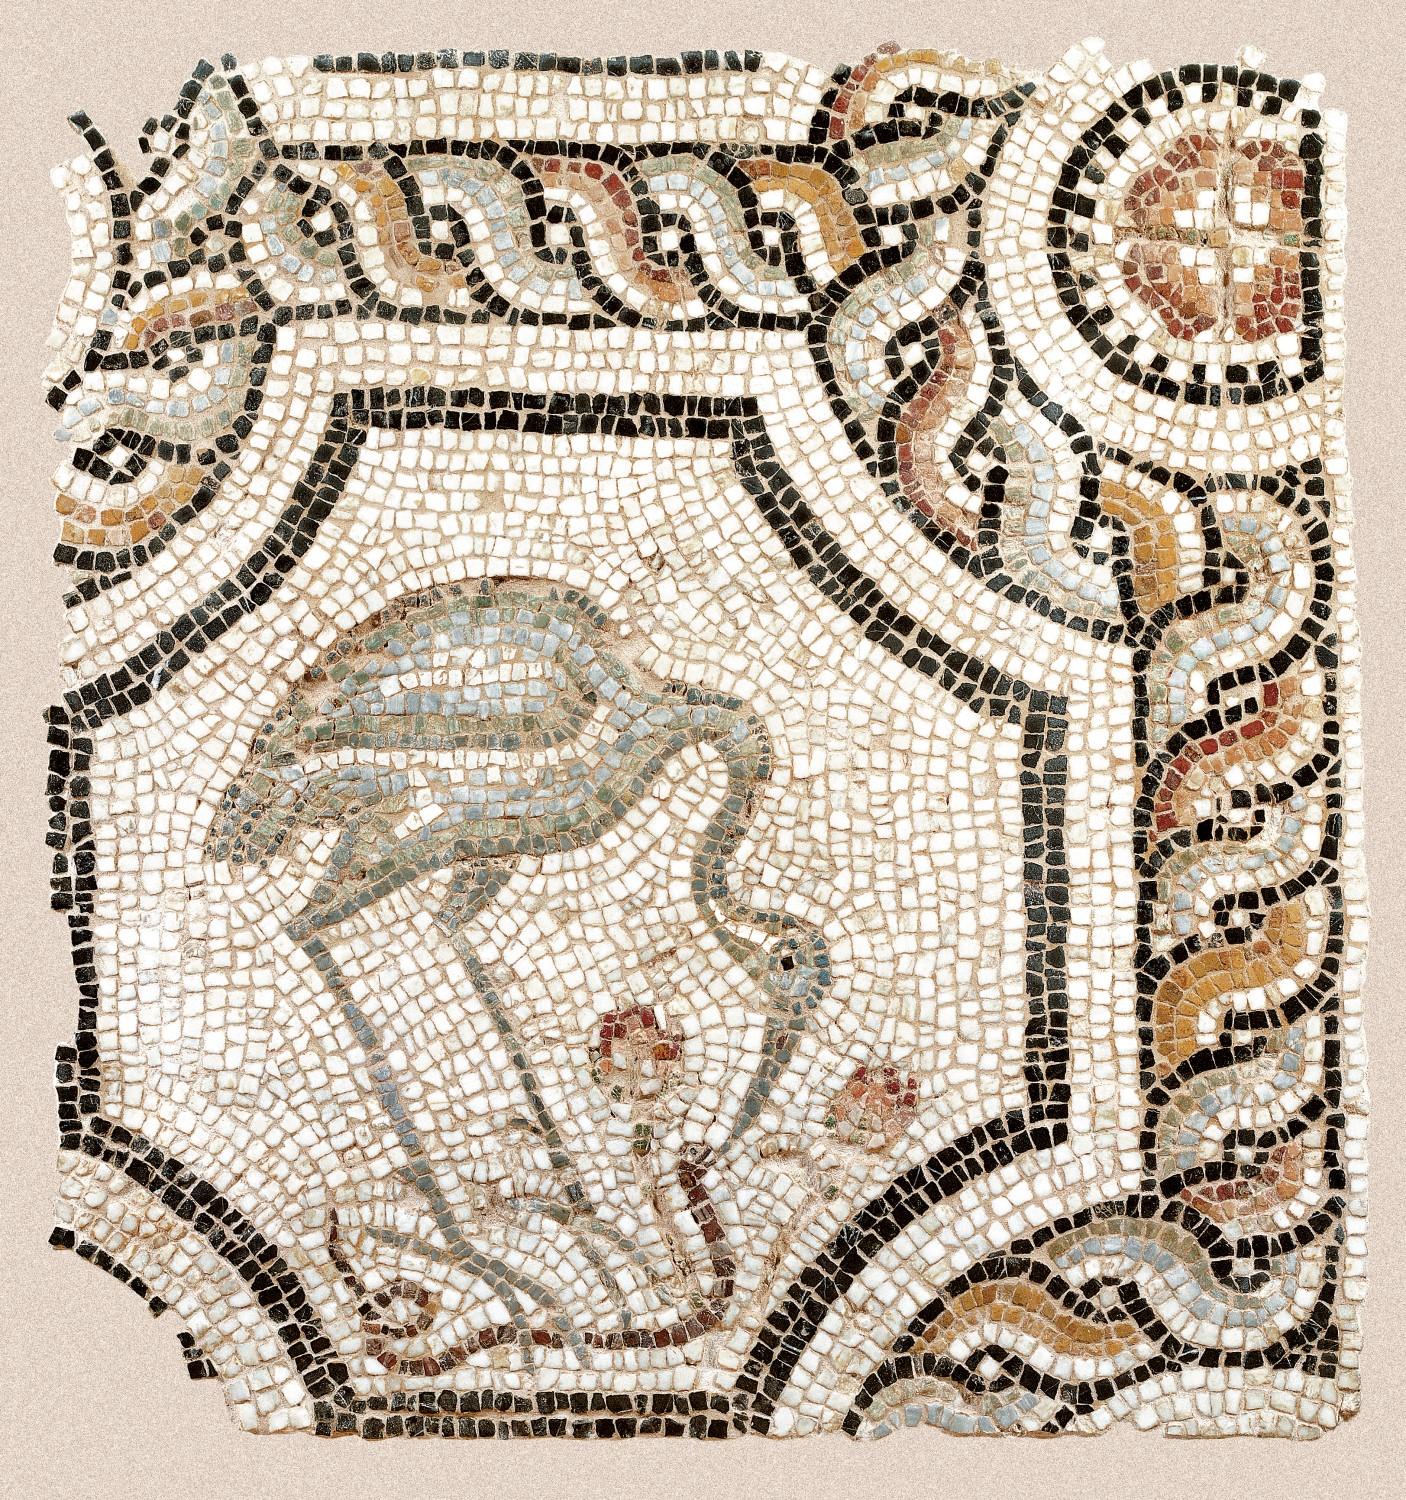 Tμήμα ψηφιδωτού δαπέδου από τη Βασιλική του Ιλισσού, Βυζαντινό και Χριστιανικό Μουσείο, Αθήνα.